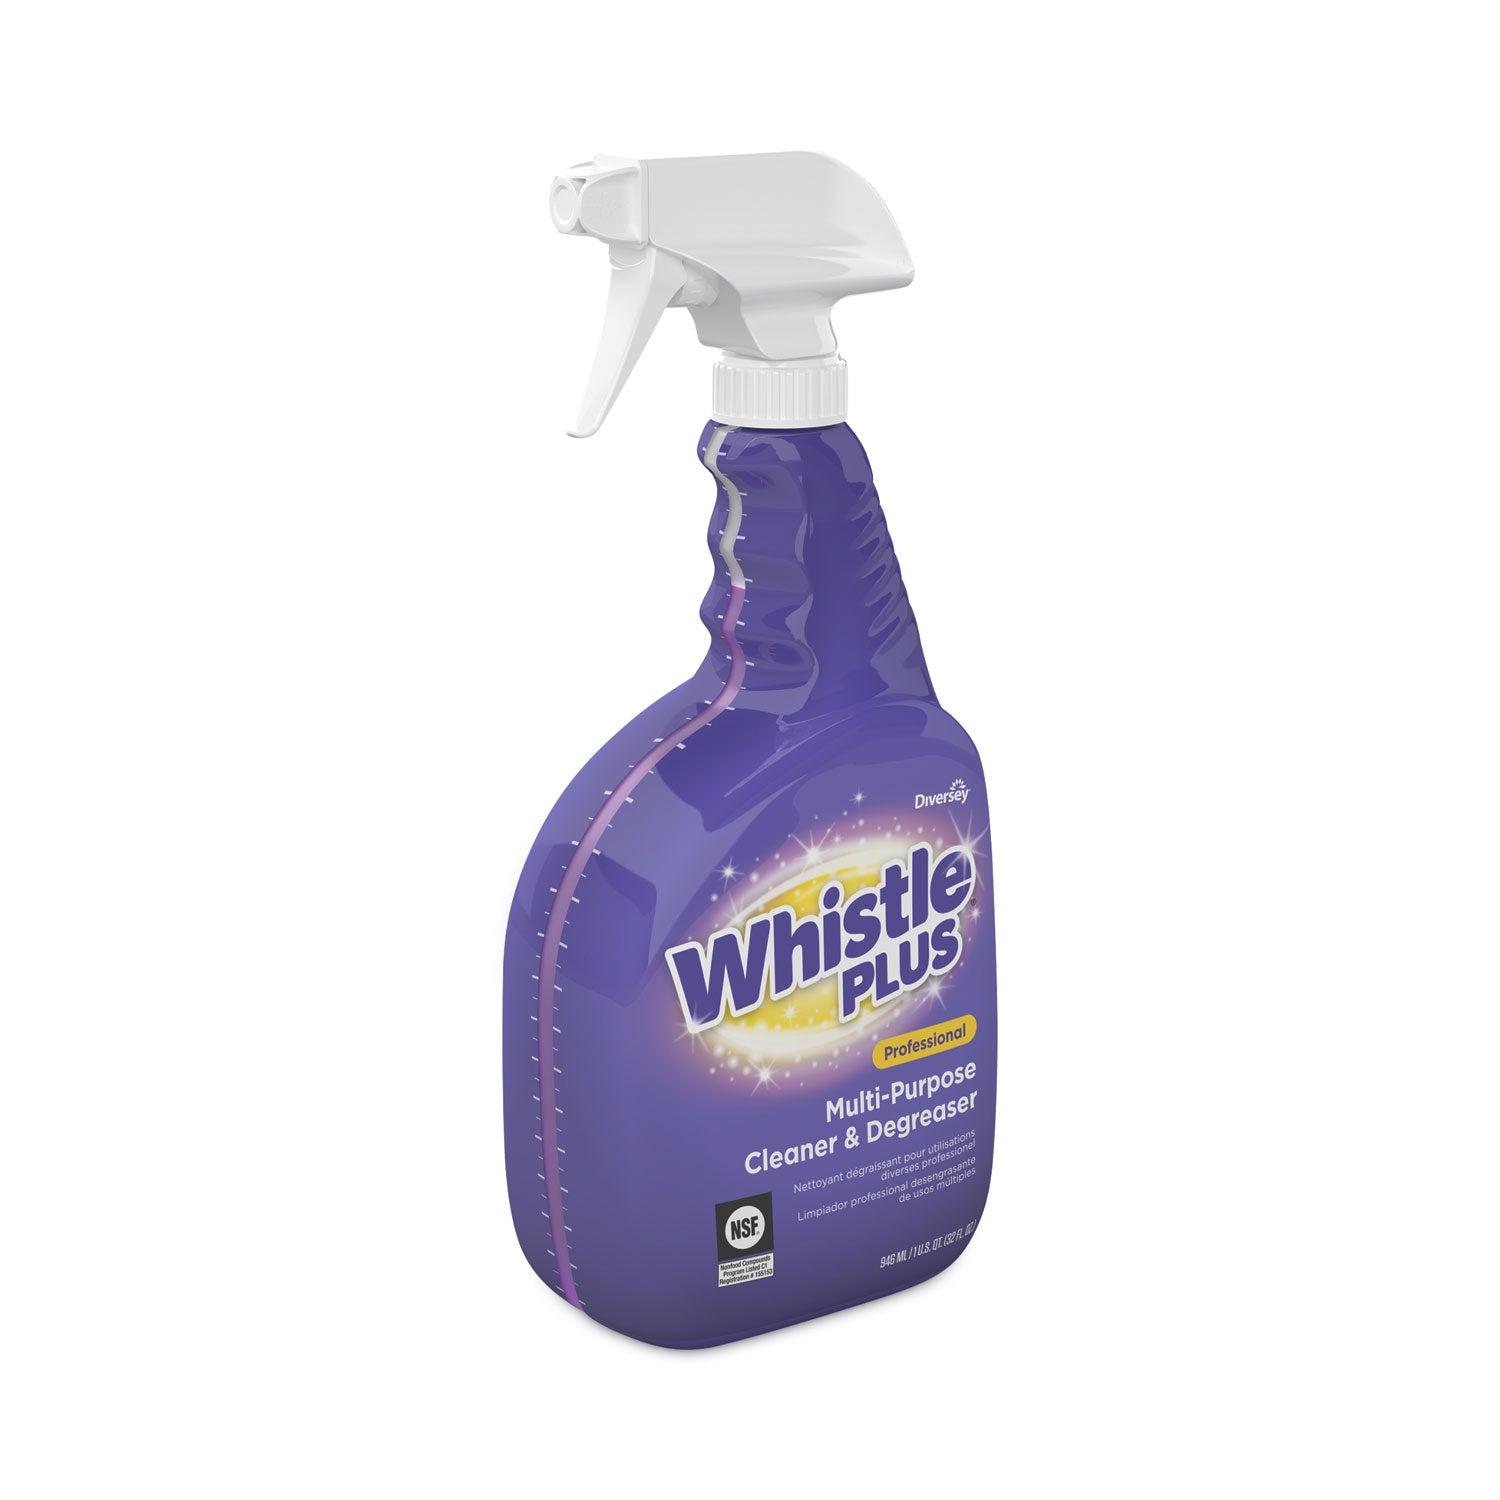 whistle-plus-multi-purpose-cleaner-and-degreaser-citrus-32-oz-spray-bottle-8-carton_dvocbd540564 - 2